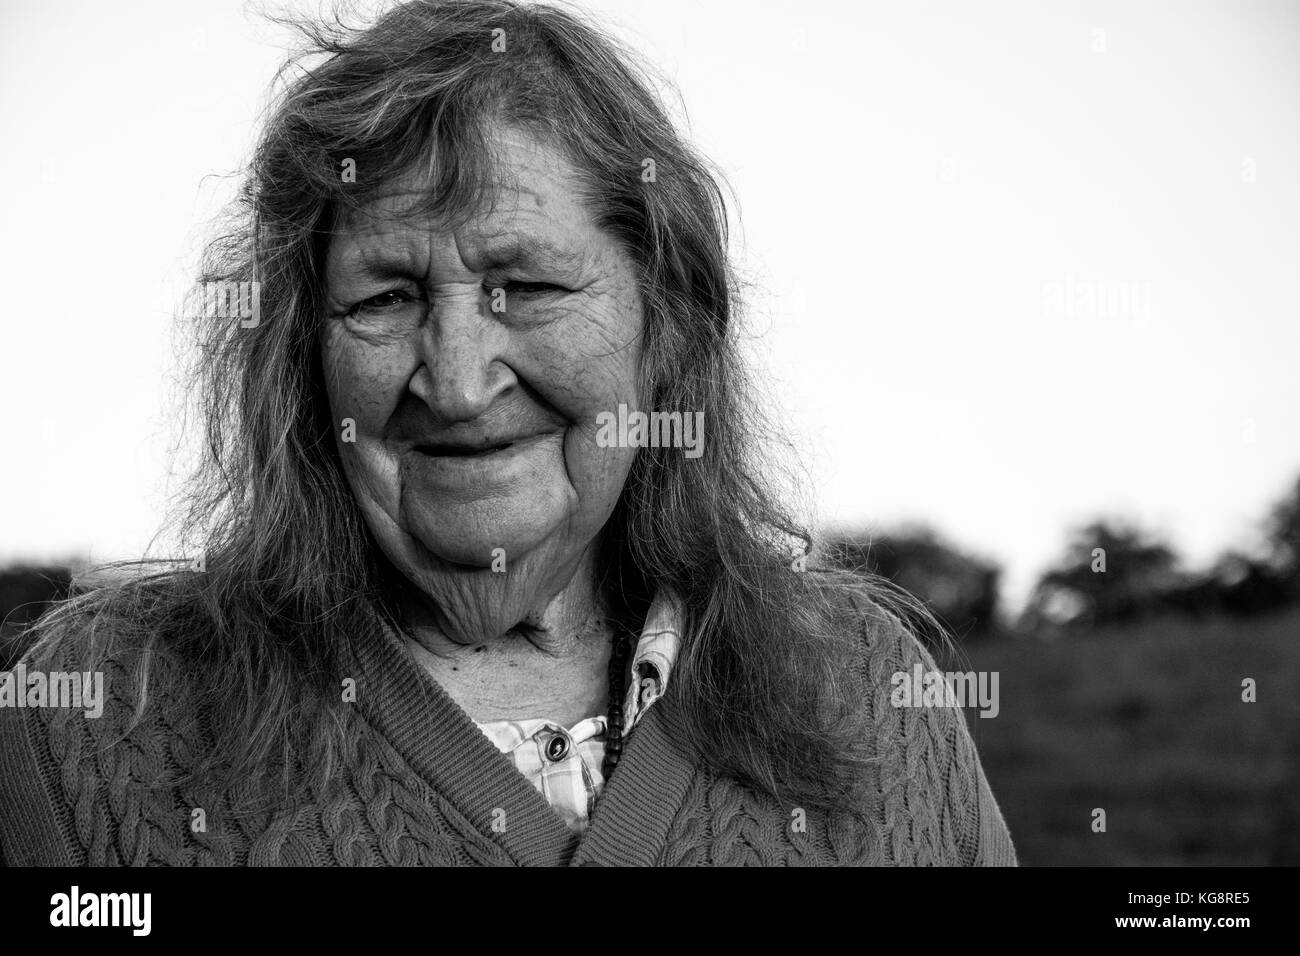 Un portrait sincère d'une personne âgée (vieille) femme sans son dentier. Pris à l'extérieur du pays. Much Wenlock, Shropshire, Angleterre Banque D'Images